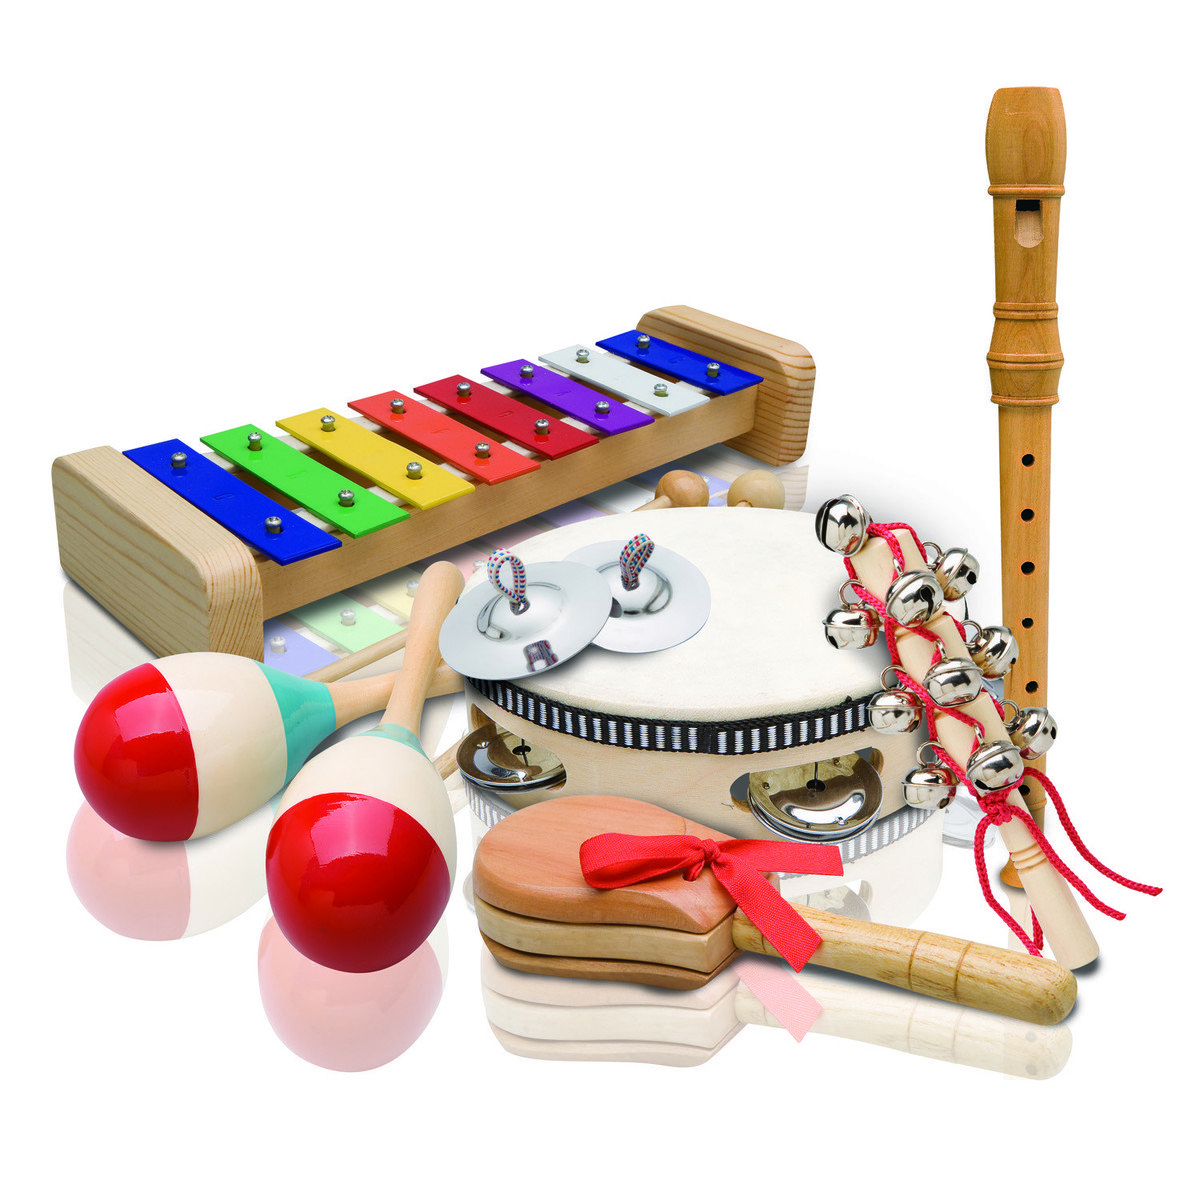 Отдельные музыкальные инструменты. Ashton pset4. Набор музыкальный. Детские музыкальные инструменты. Шумовые музыкальные инструменты. Музыкальные игрушки для дошкольников.